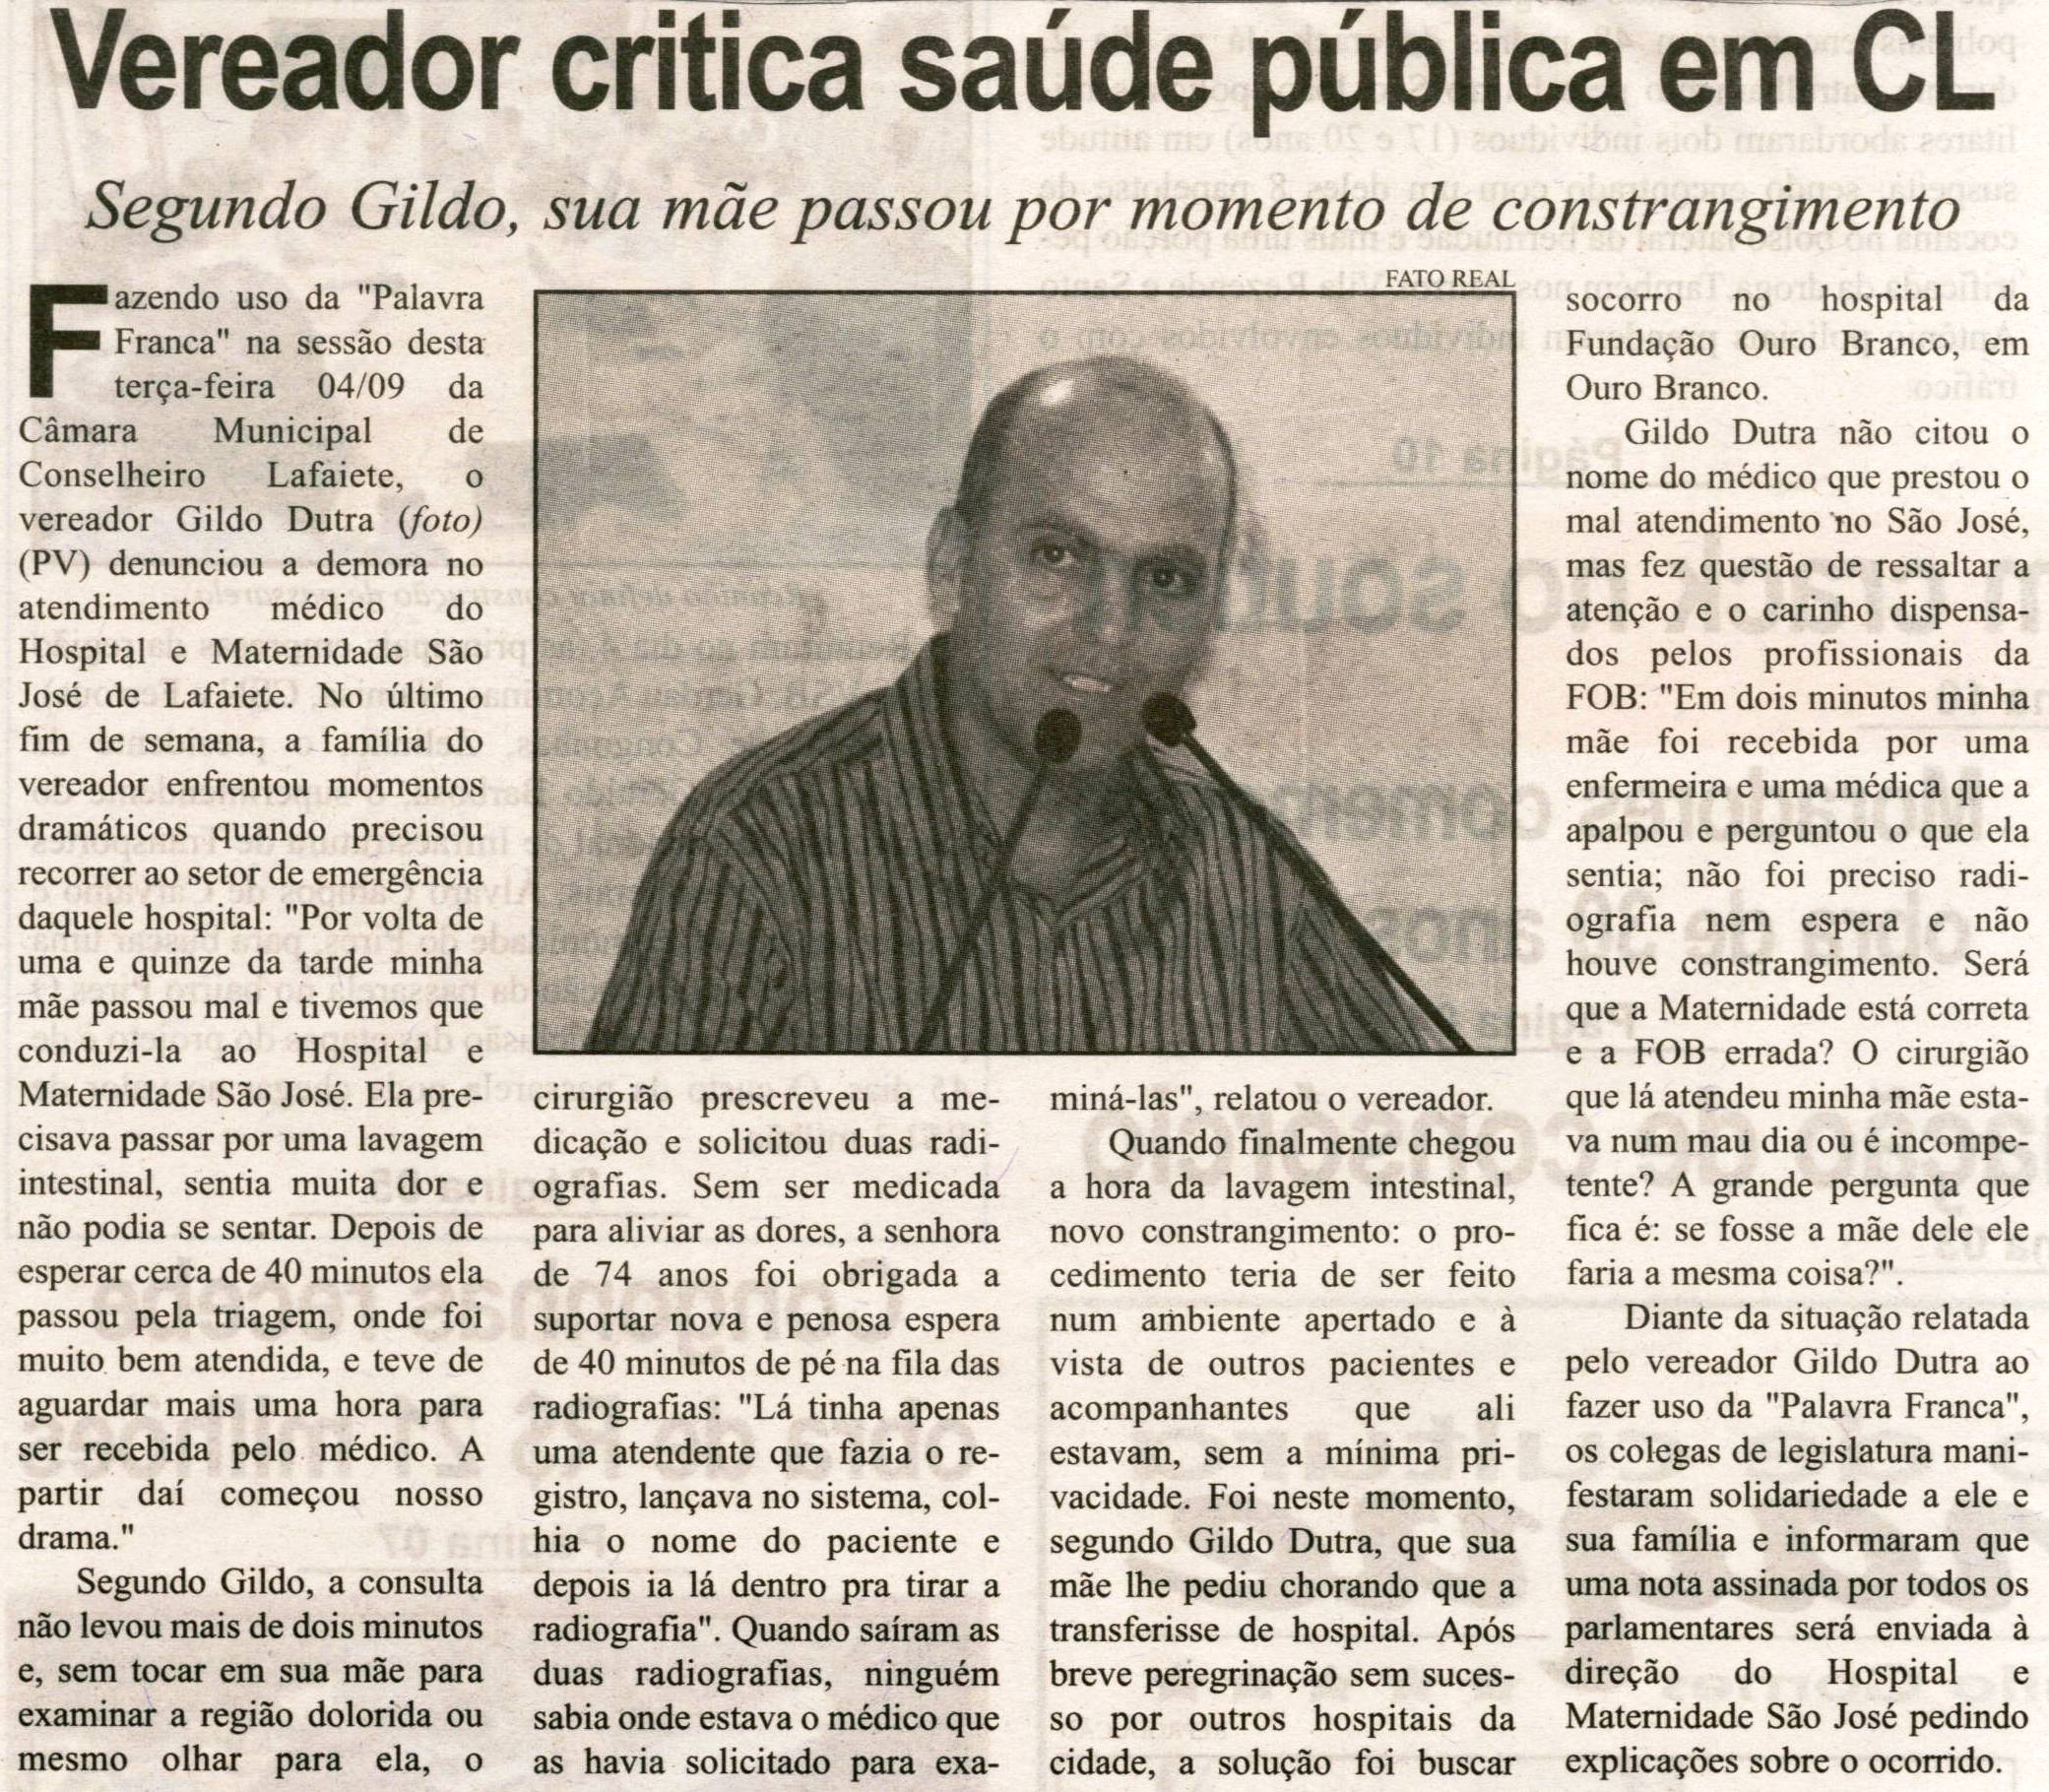 Vereador critica saúde pública em CL: segundo Gildo, sua mãe passou por momento de constrangimento. Correio de Minas, Conselheiro Lafaiete, 07 set. 2013, p. 03.